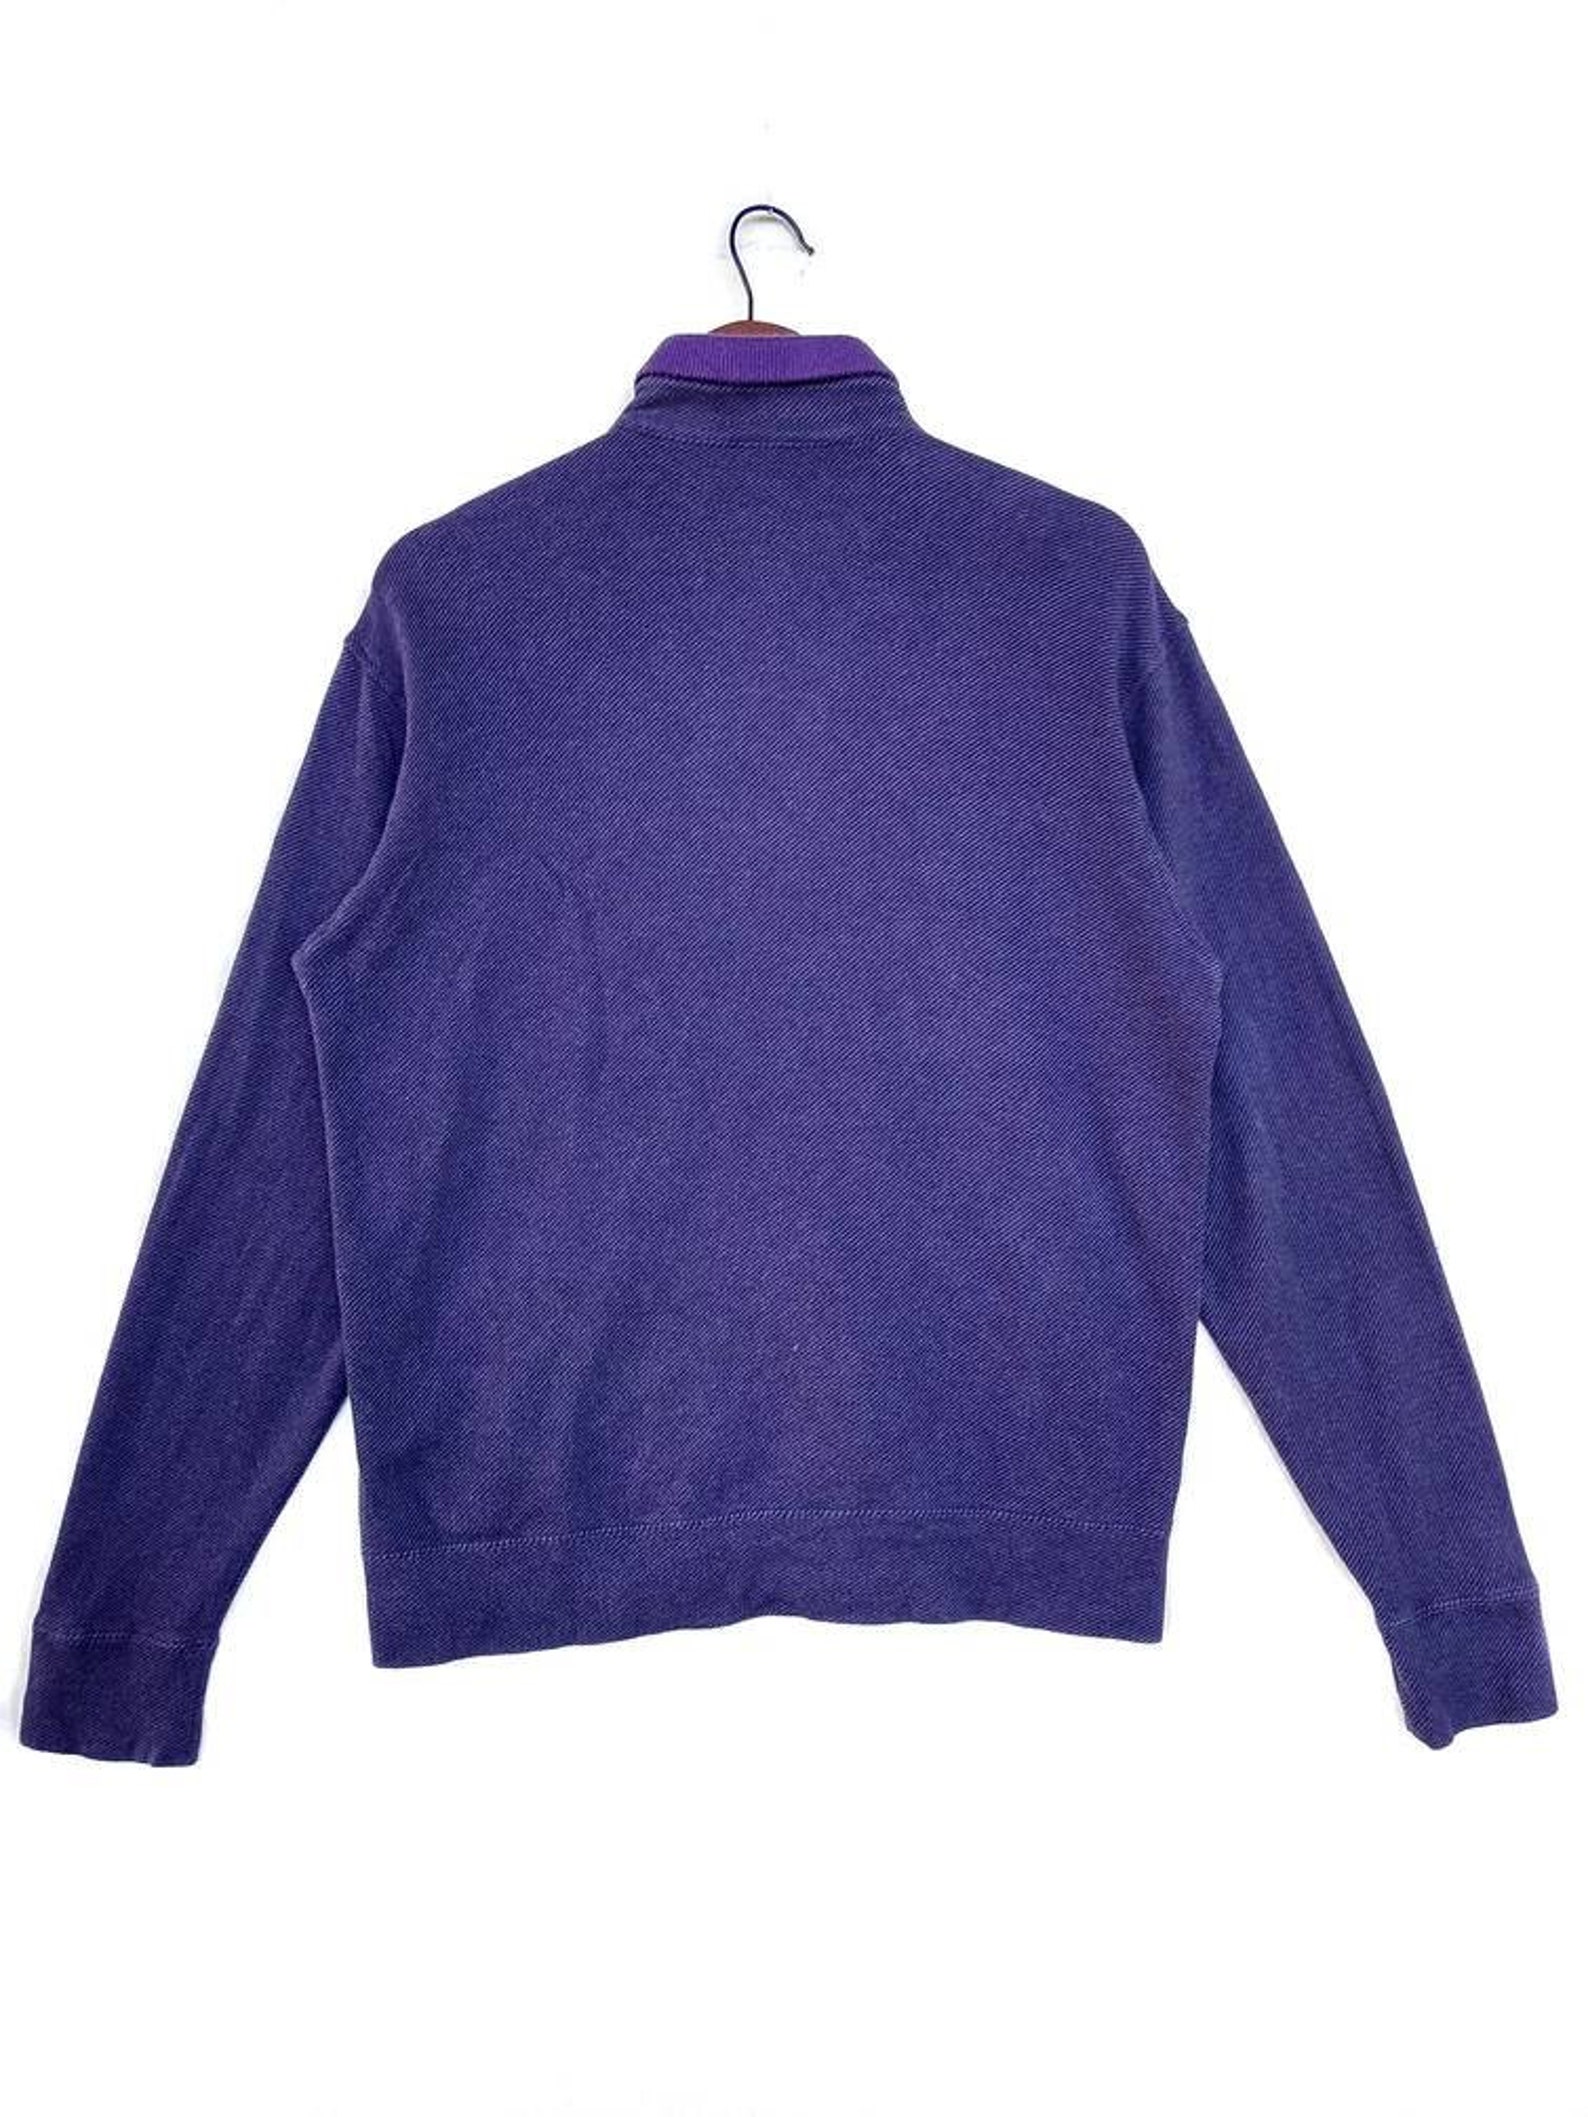 Mcgregor Sweater Full Zip..color Purple....saiz M - Etsy